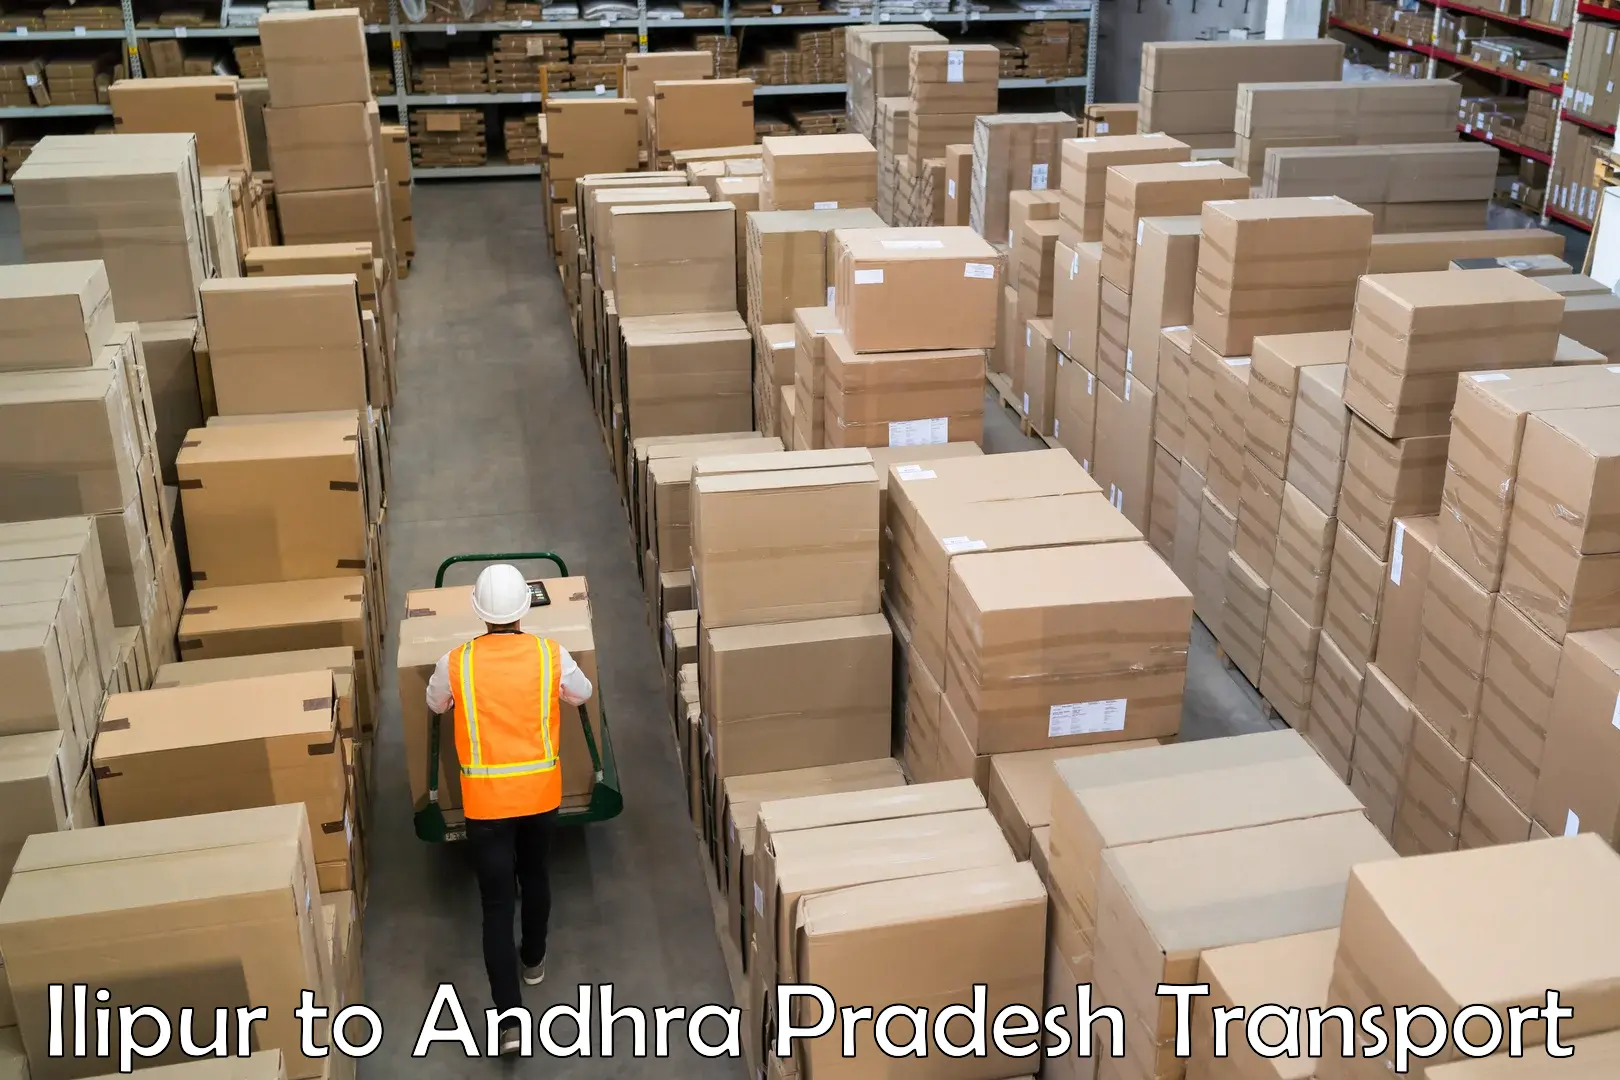 Truck transport companies in India Ilipur to Bhimavaram